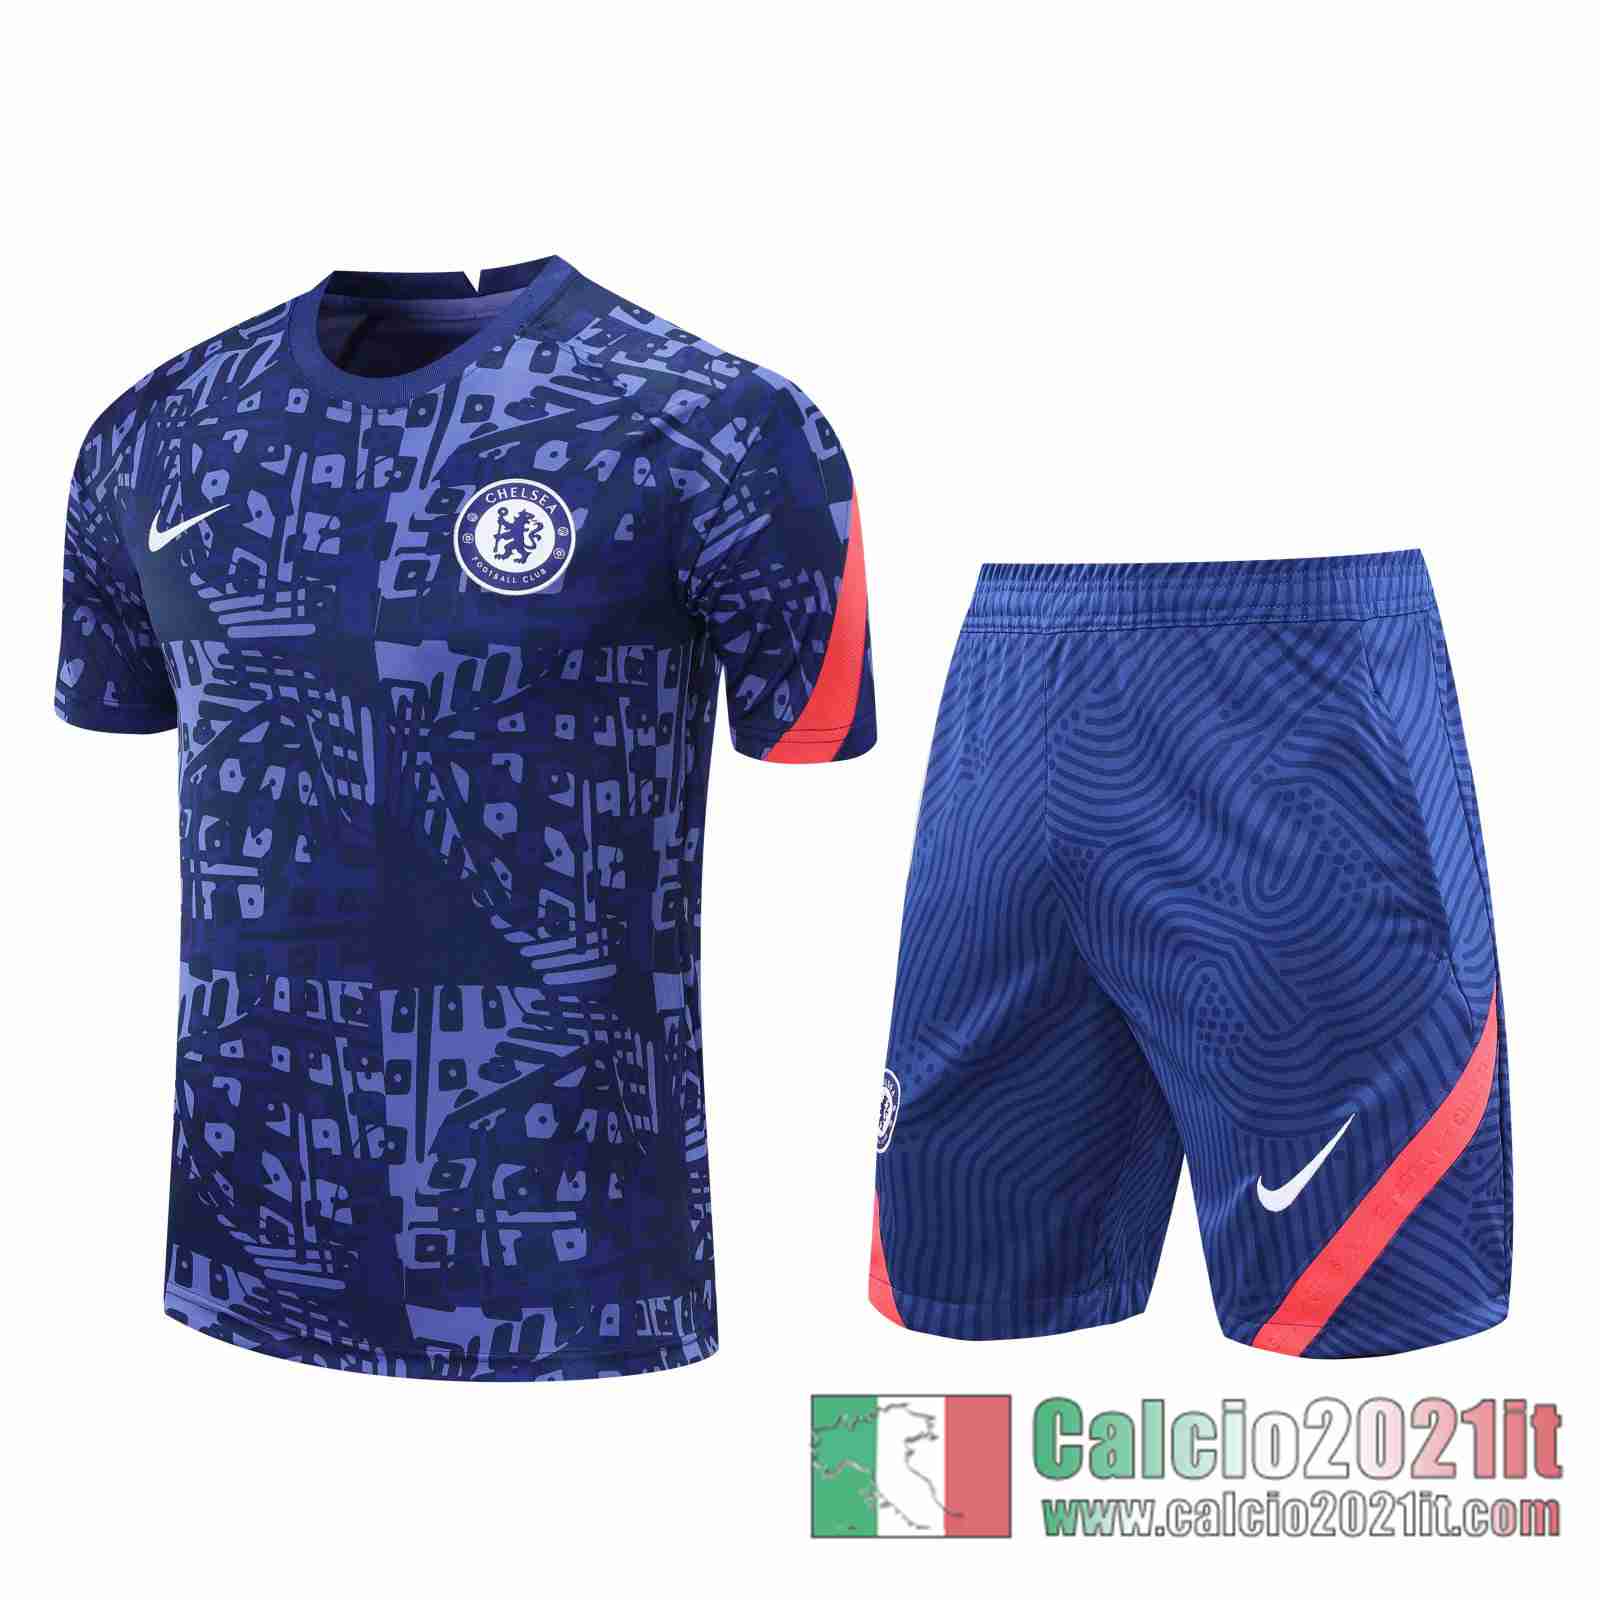 Chelsea Magliette Tuta Calcio blu Stampa tampografica 2020 2021 T114